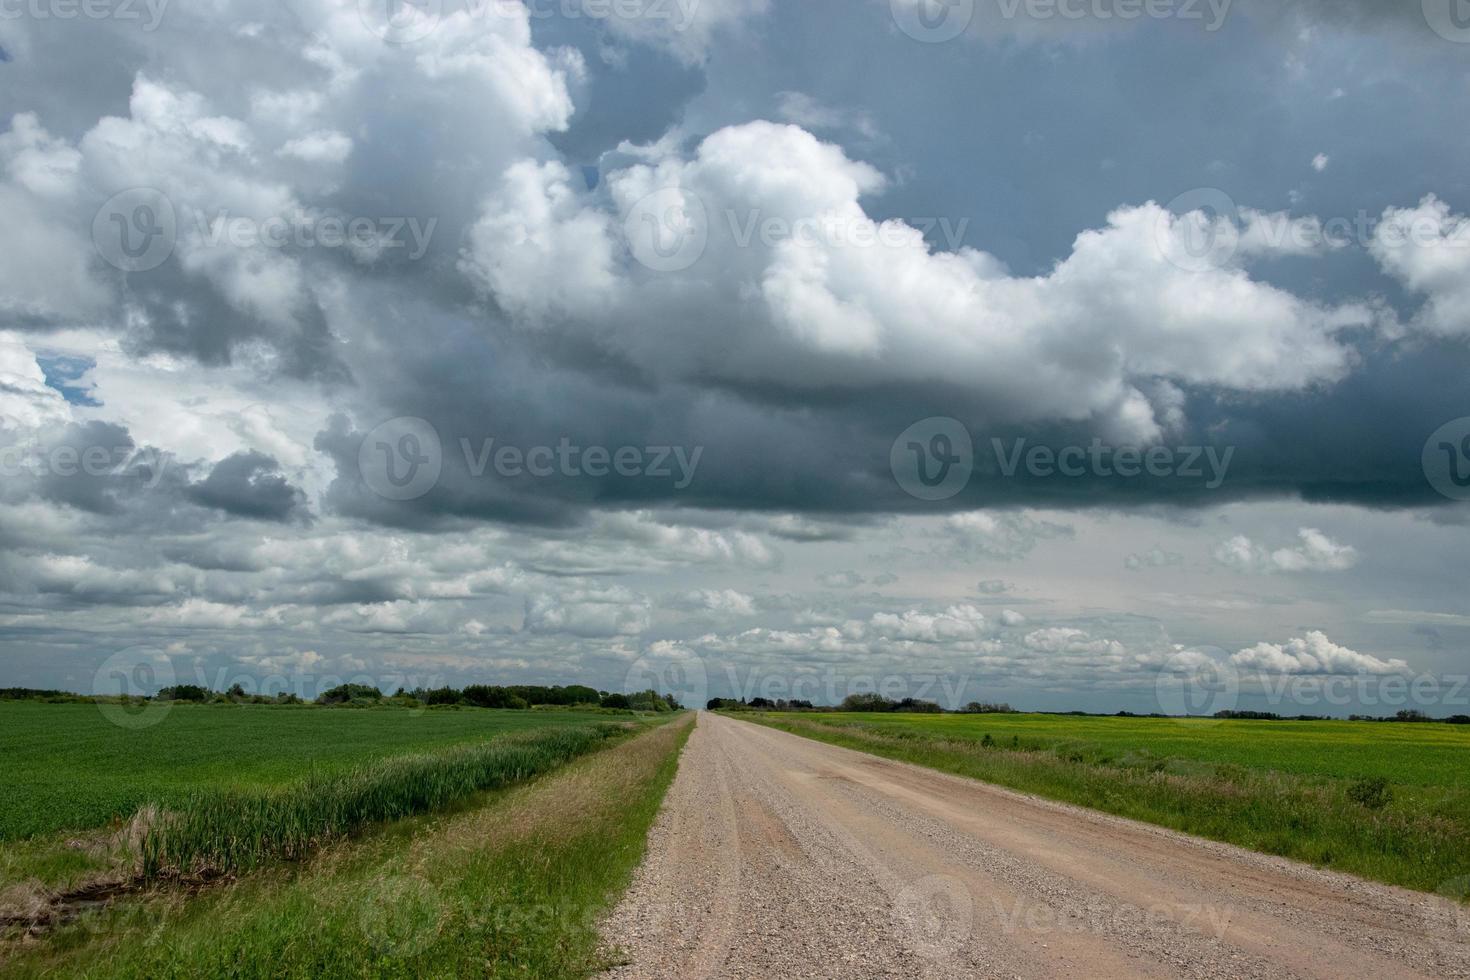 landsbygdsväg och jordbruksmark, saskatchewan, kanada. foto